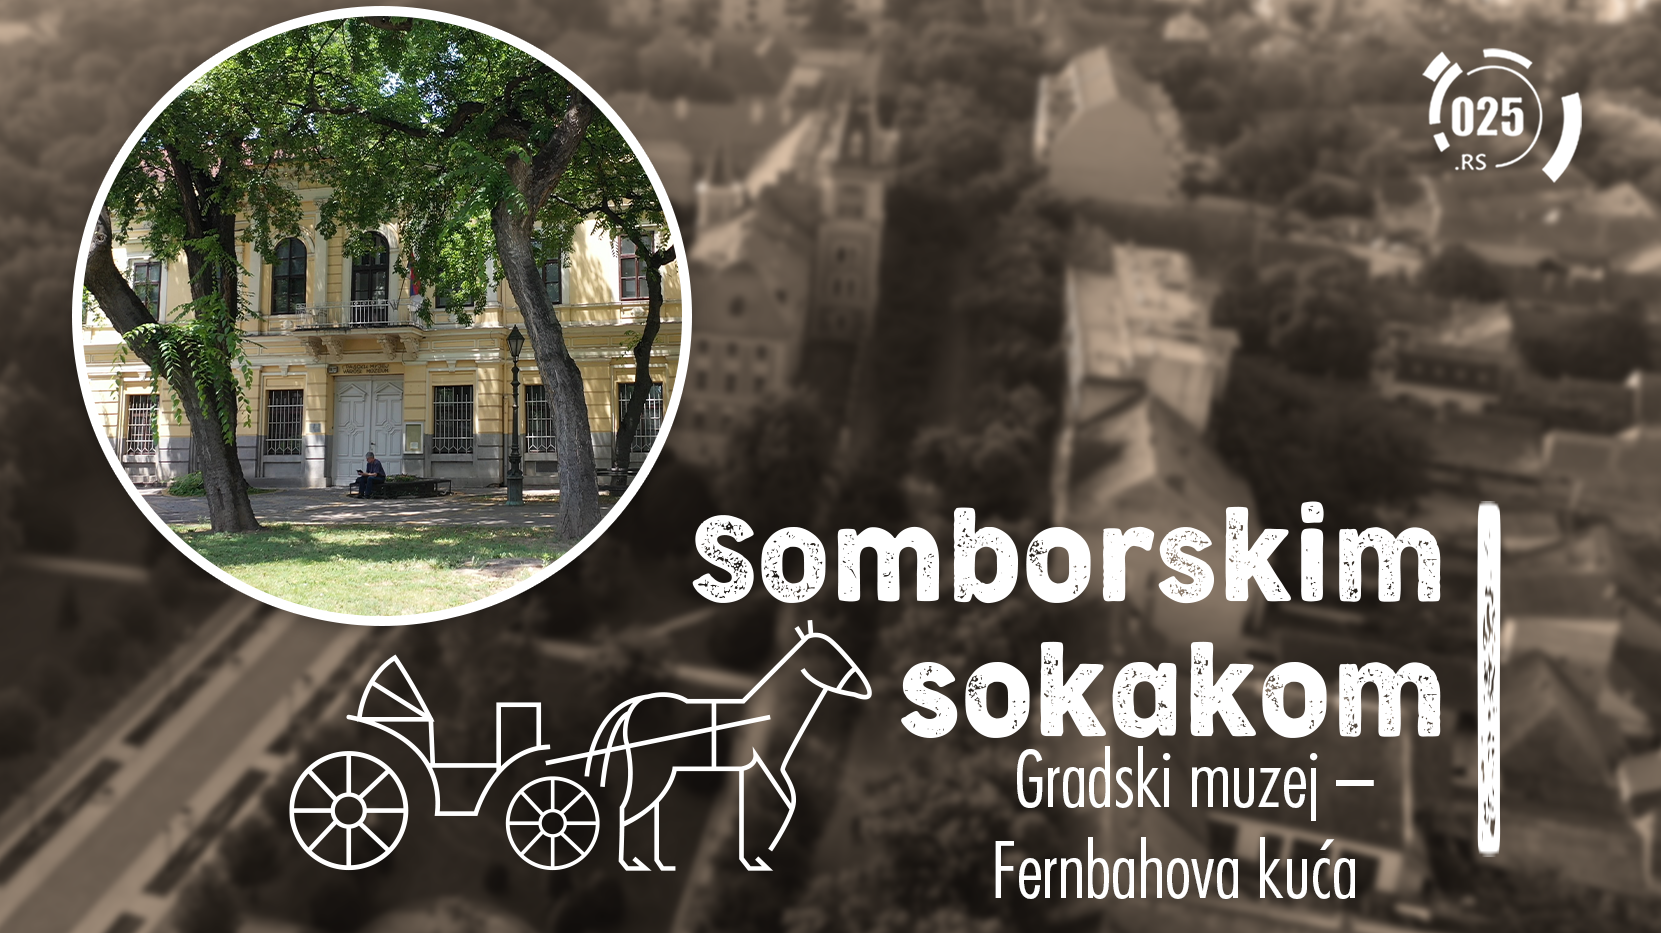 Somborskim sokakom - Gradski muzej